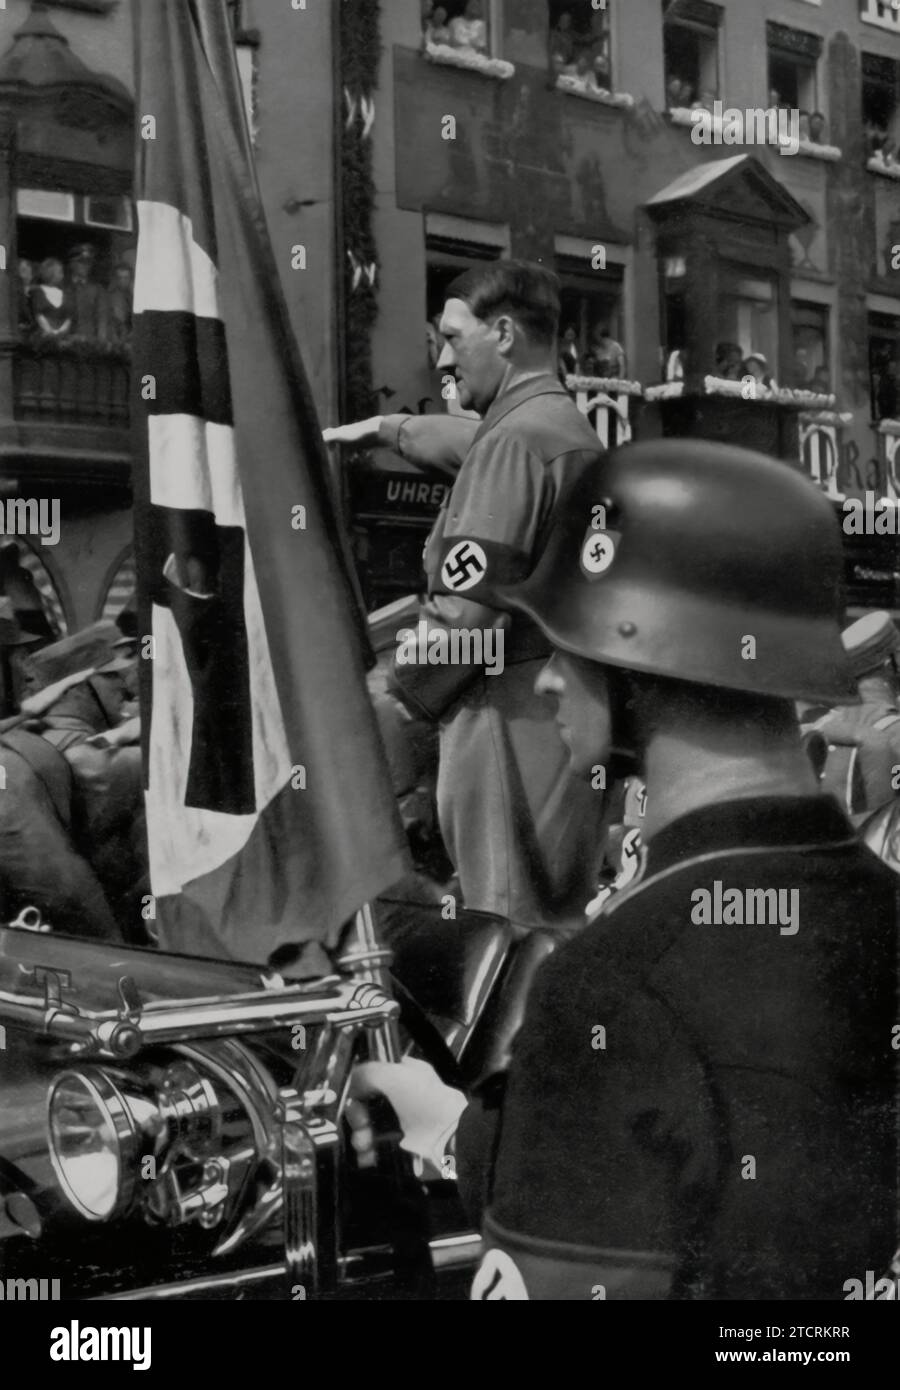 Bei der Nürnberger Rallye wird Adolf Hitler die Blutfahne aus dem Jahr 1923, ein verehrtes Symbol der Nazi-Überlieferung, grüßen. Diese Flagge, die mit dem Blut von Parteimitgliedern aus der Bierhalle Putsch befleckt wurde, wurde zur Weihe neuer Fahnen verwendet. Hitlers Gruß an die Blutfahne unterstreicht die Verehrung seiner frühen Kämpfe und der Opfer seiner Mitglieder durch das Regime und symbolisiert einen kontinuierlichen Faden der Loyalität und des Martyriums innerhalb der Nazi-Bewegung. Stockfoto